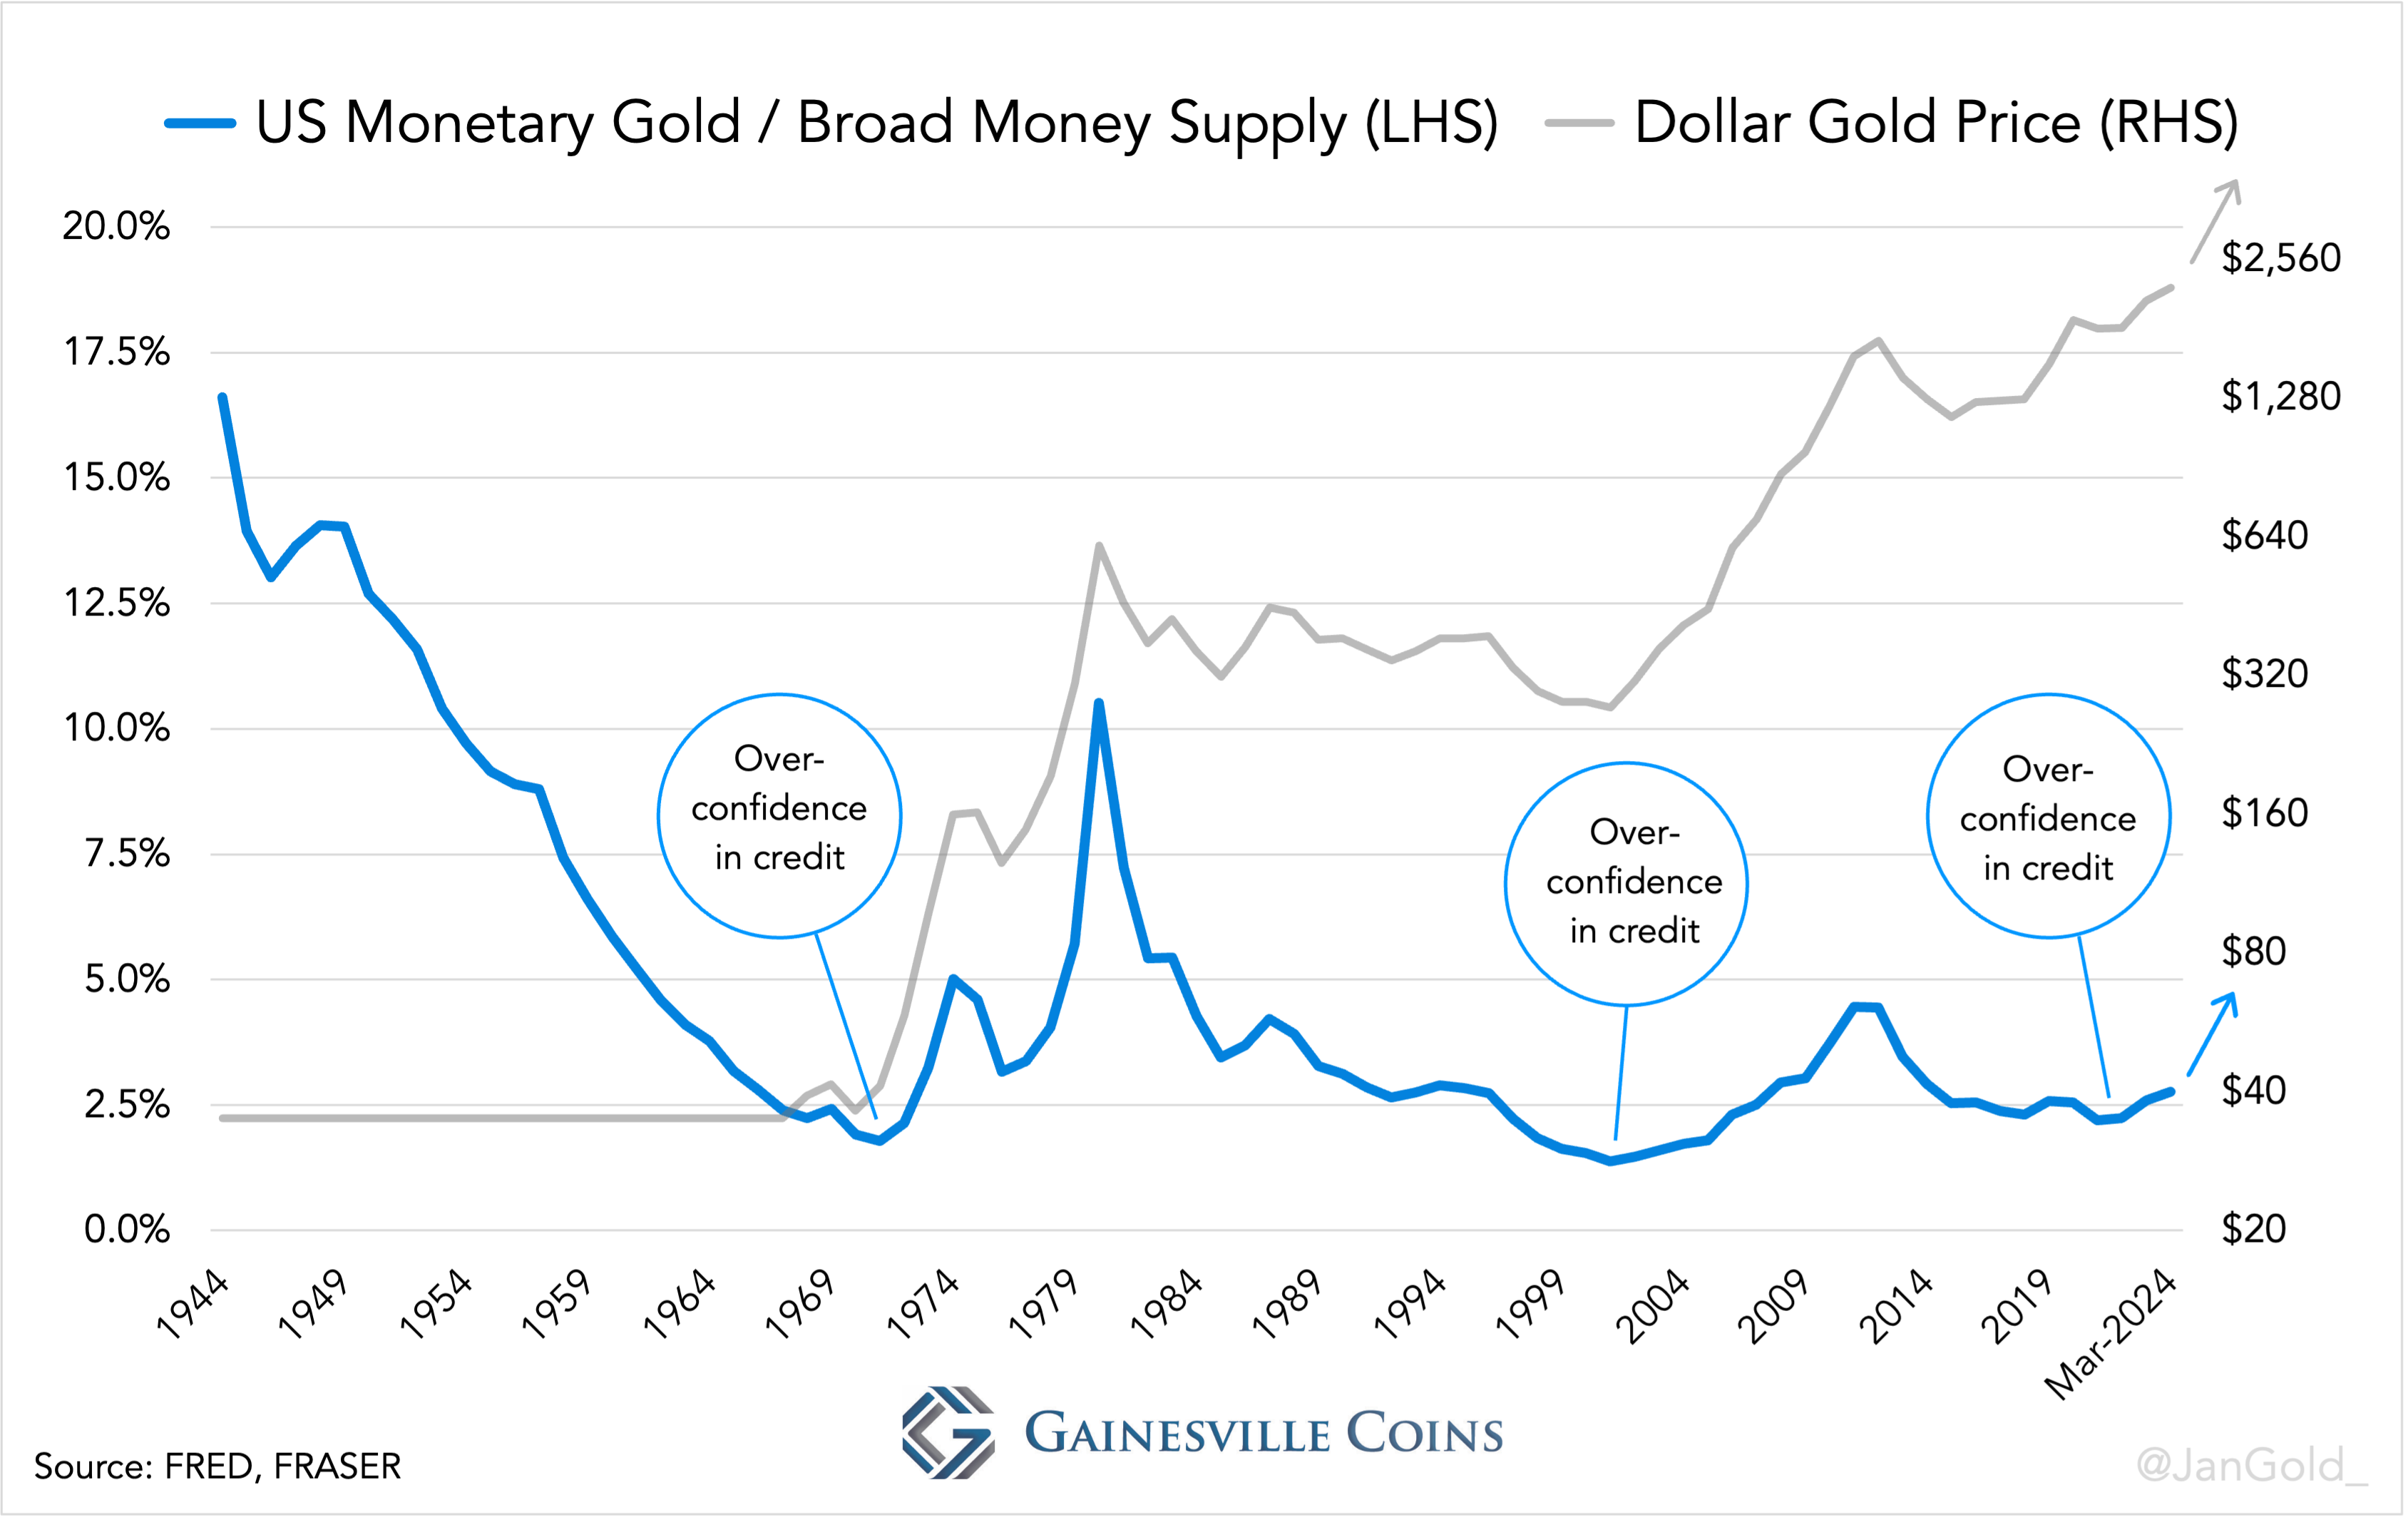 Η αξία του νομισματικού χρυσού των ΗΠΑ διαιρεμένη με την ευρεία προσφορά χρήματος σε δολάρια (Μ2) και την τιμή του χρυσού